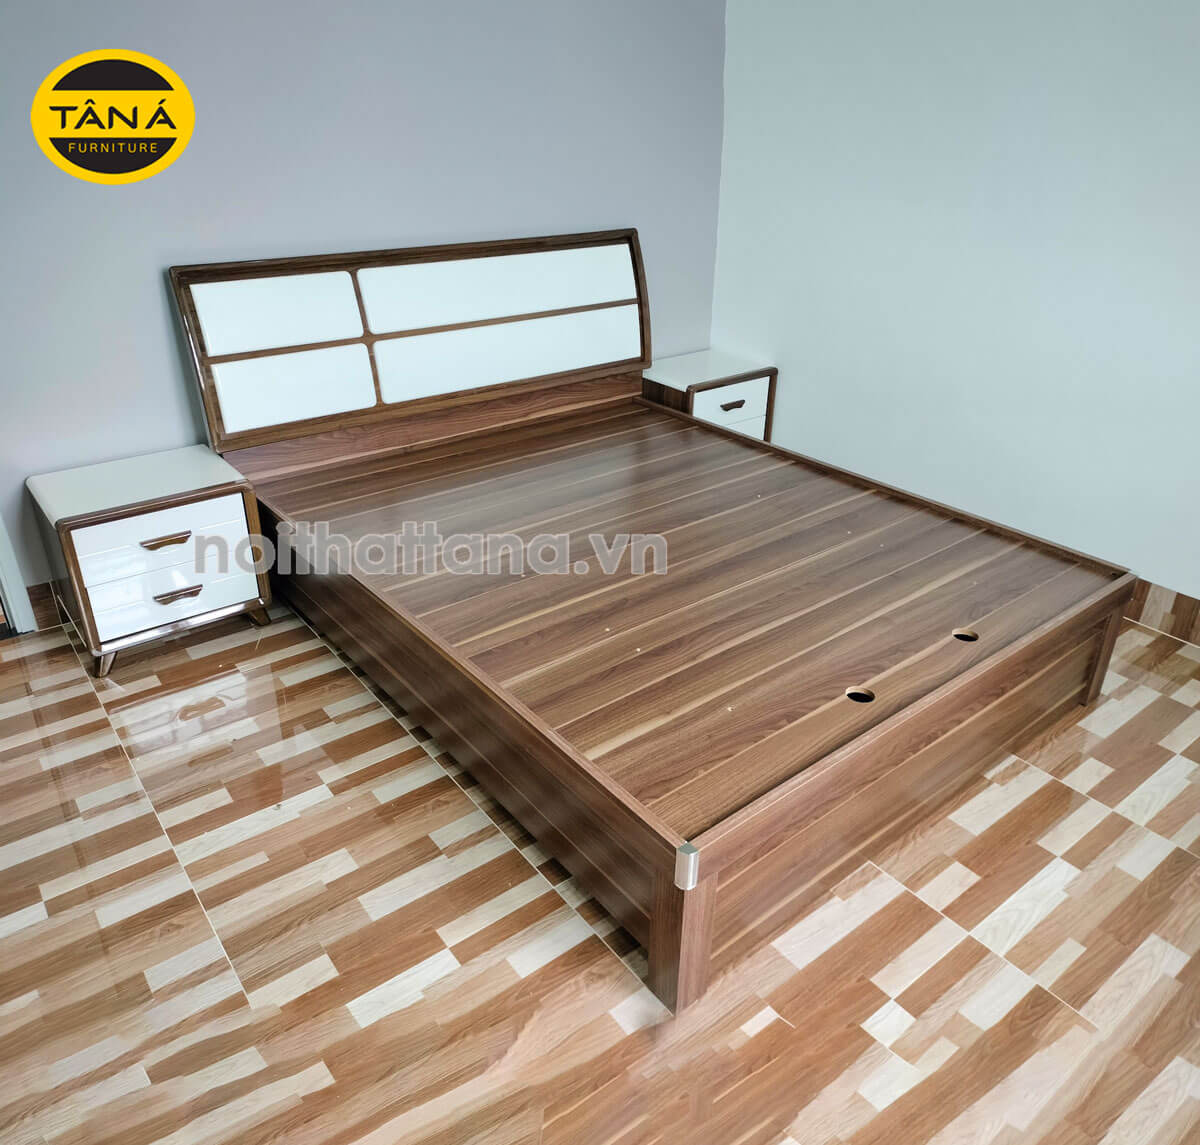 Giường ngủ gỗ mdf hiện đại TA-1954